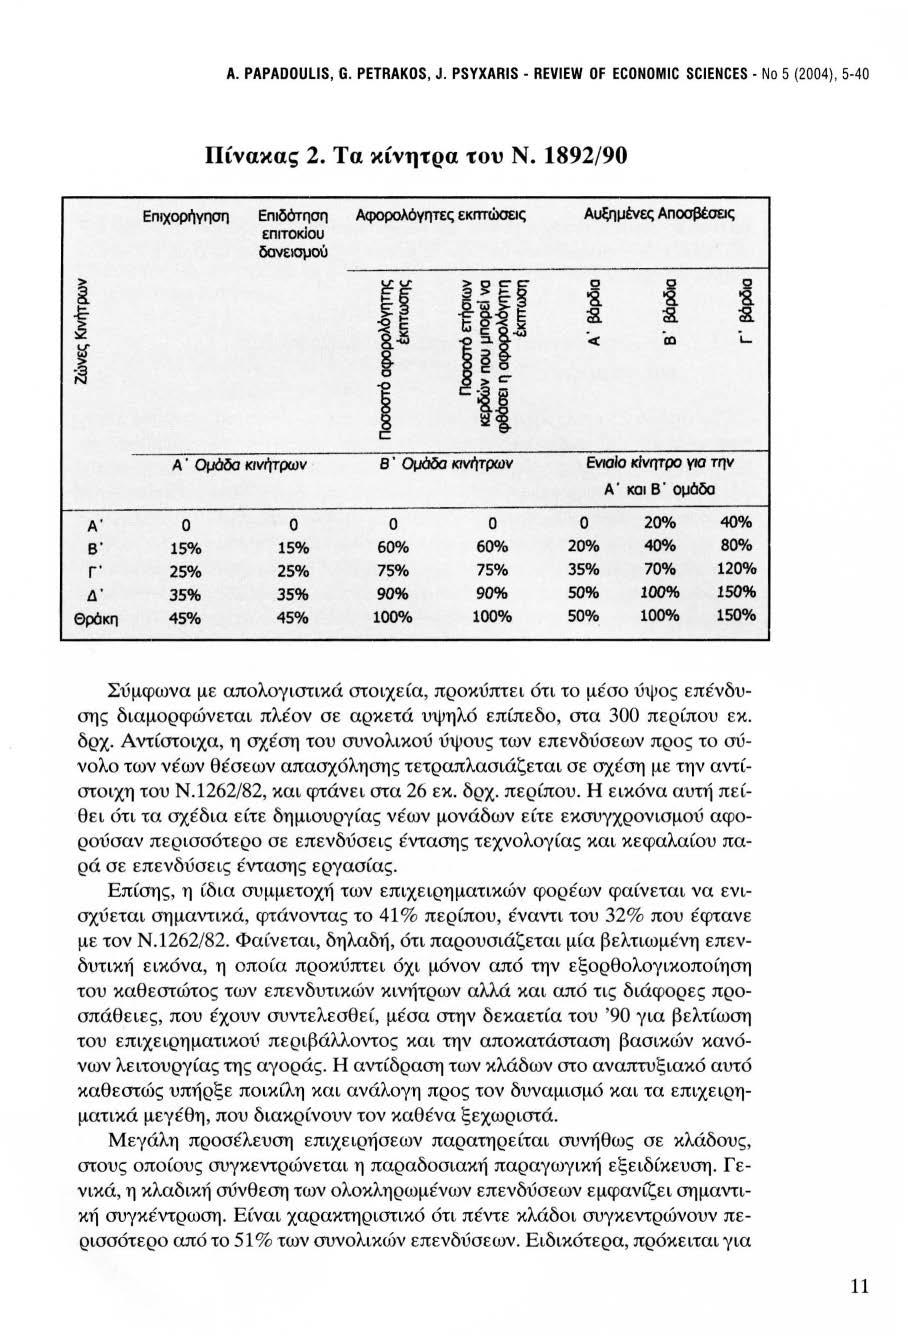 Α. PAPADOULIS, G. PETRAKOS, J. PSYXARIS - REVIEW OF ECONOMIC SCIENCES - Ν ο 5 (2004), 5-40 Πίνακας 2. Τα κίνητρα του Ν.